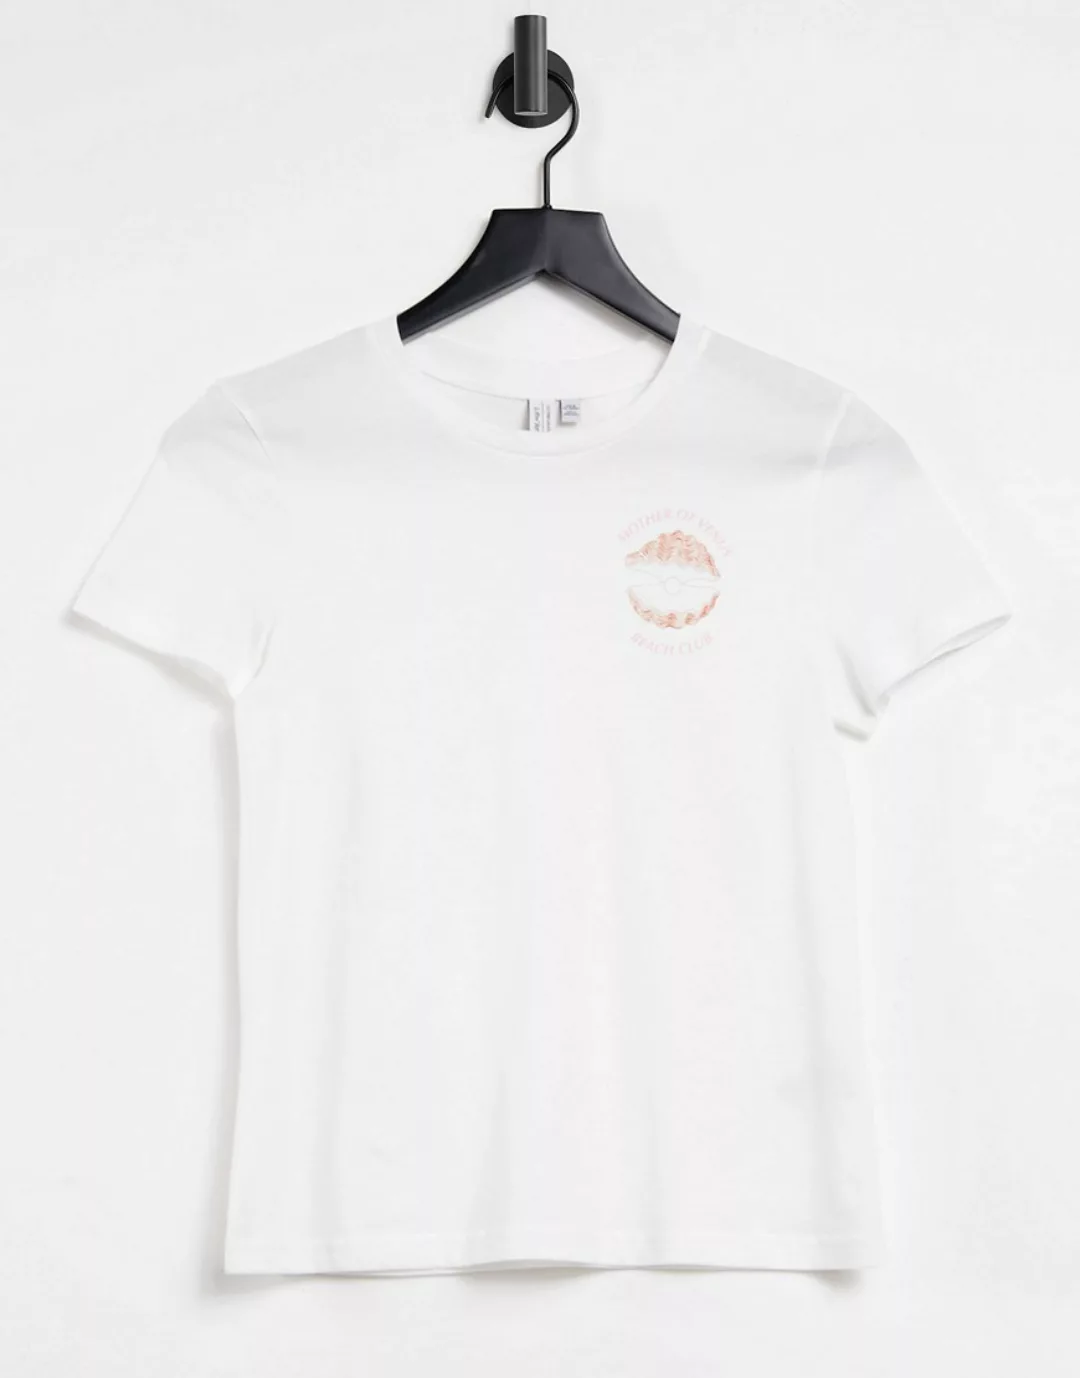 & Other Stories – T-Shirt mit Slogan aus Bio-Baumwolle in gebrochenem Weiß günstig online kaufen